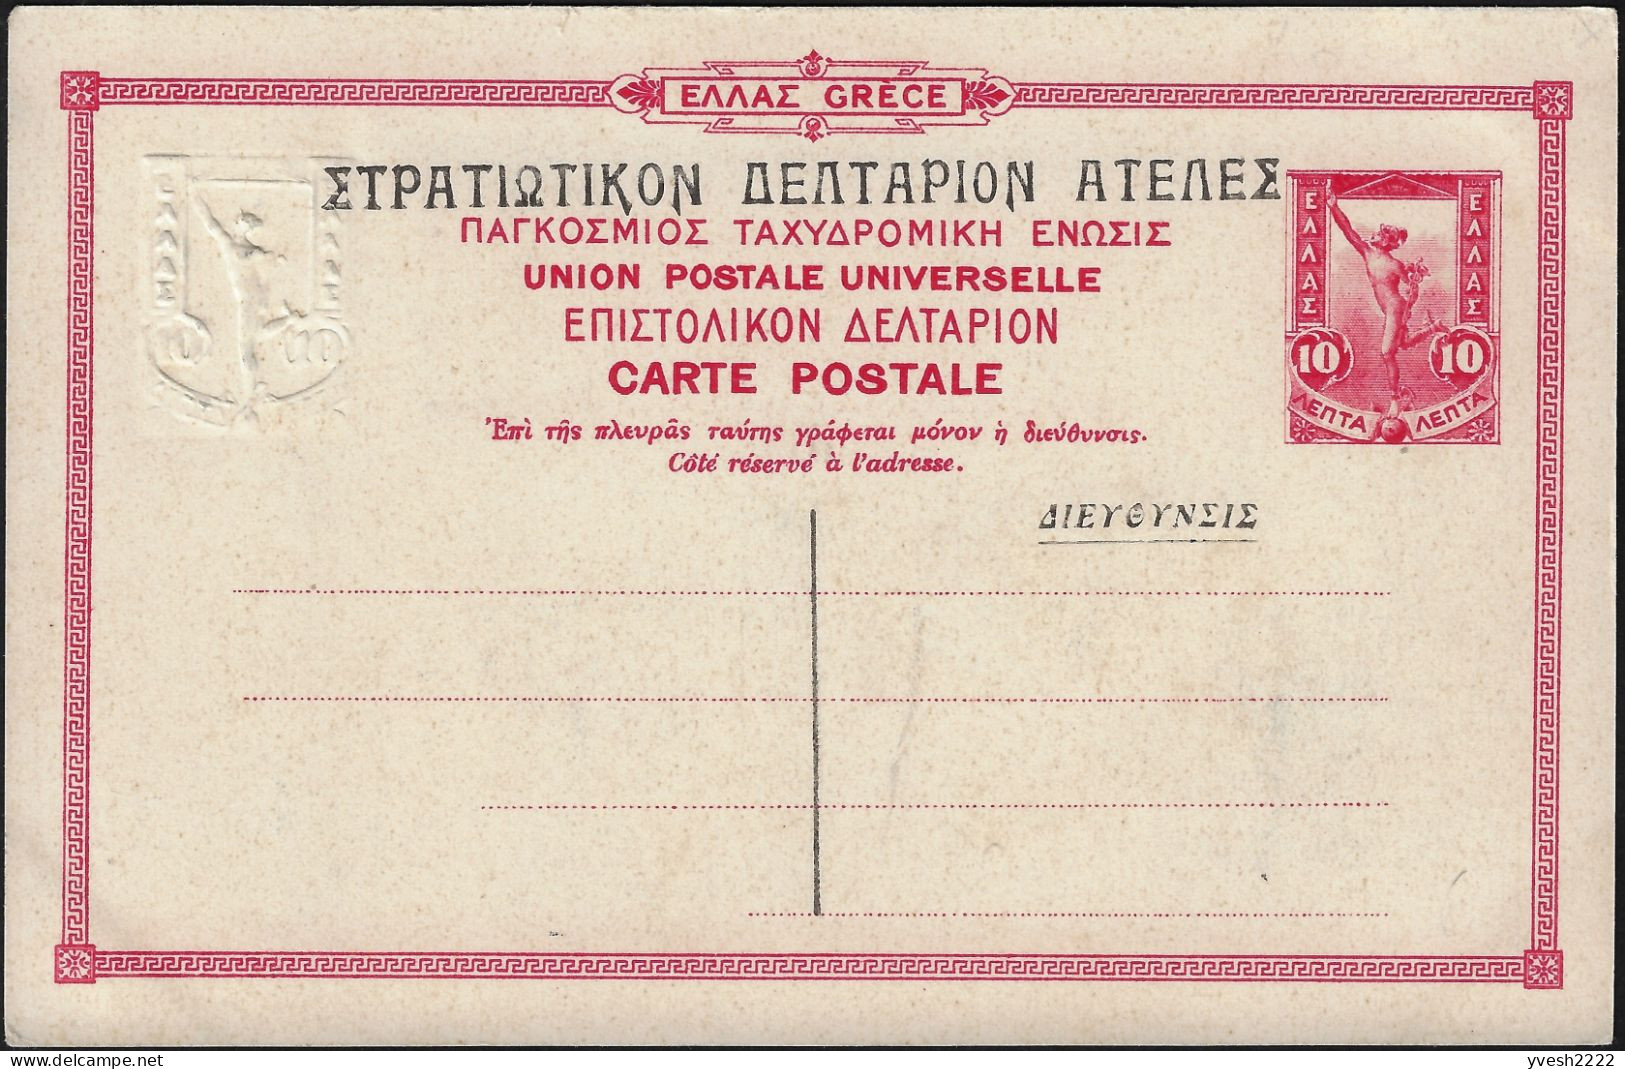 Grèce 1903 et 1915. Entiers officiels. Athènes, statues d'Esculape d'Épidaure, dieu de la médecine, & Pan de Sparte